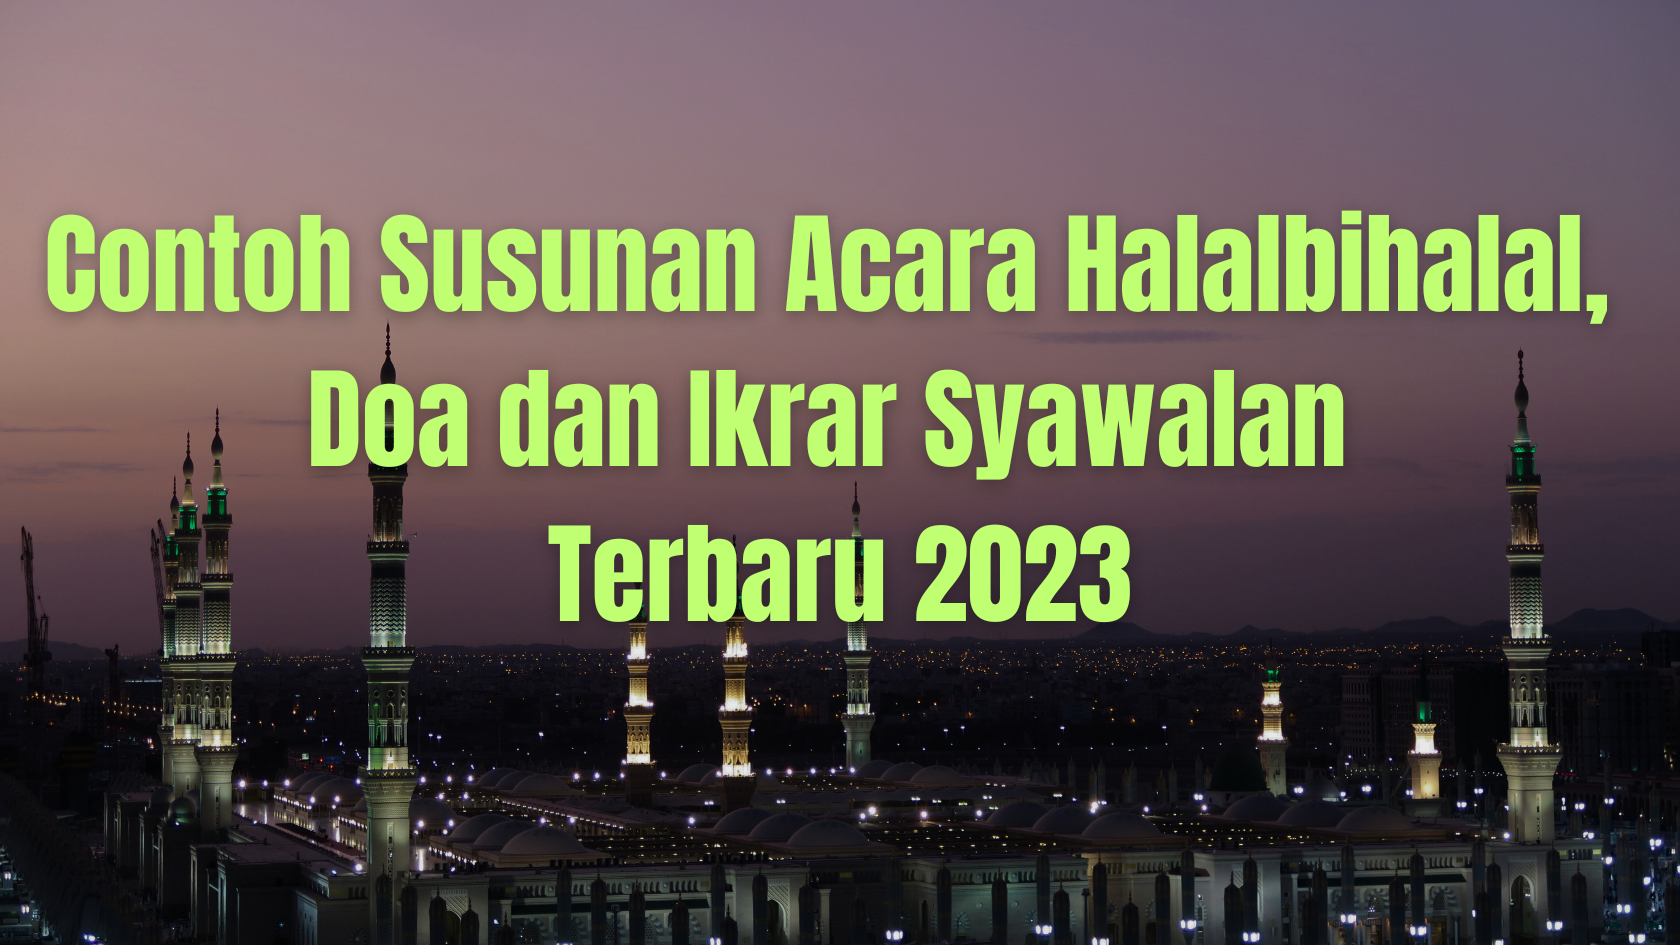 Contoh Susunan Acara Halalbihalal, Doa dan Ikrar Syawalan Terbaru 2023